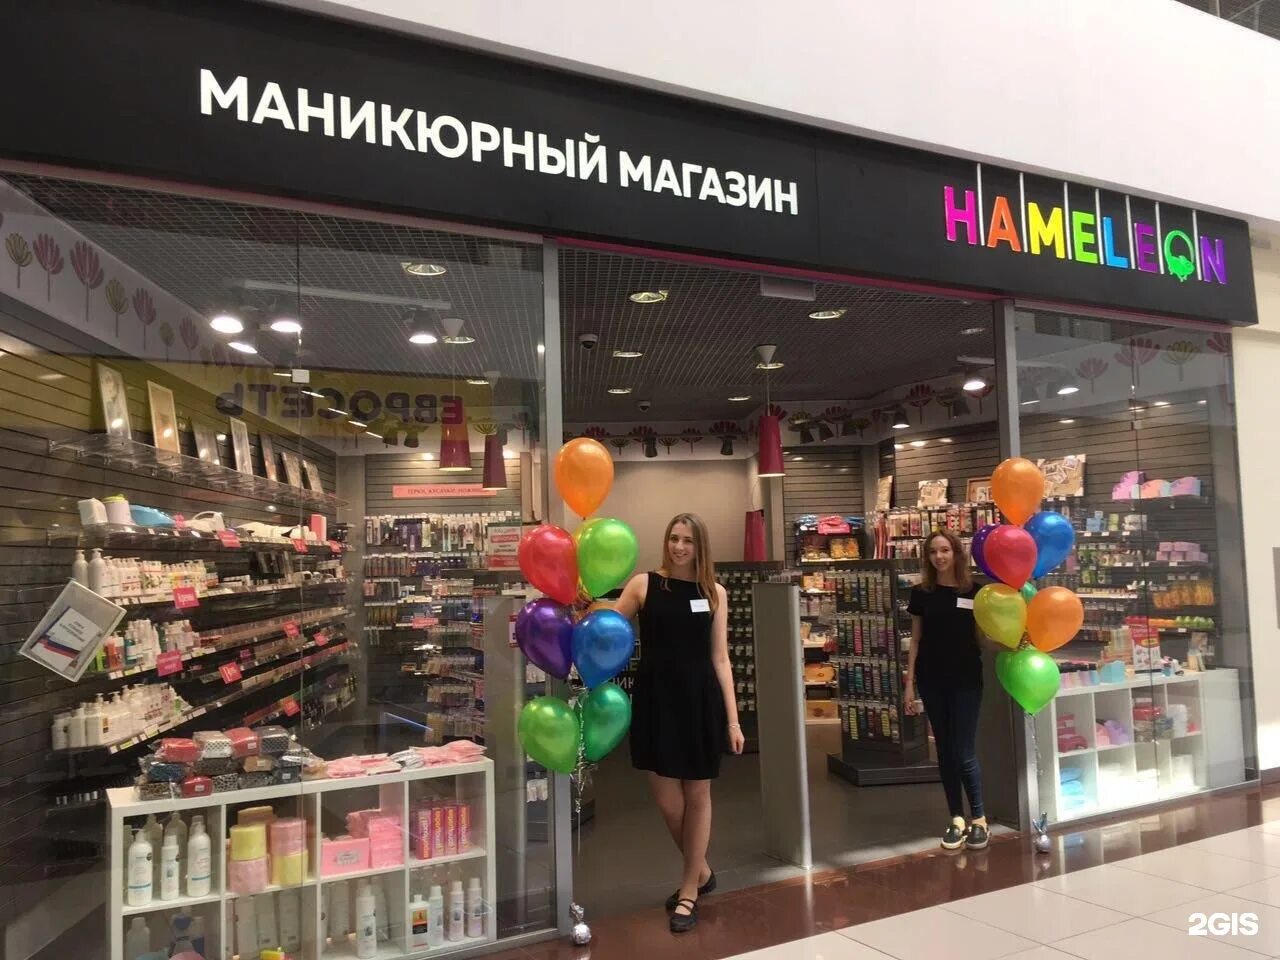 Хамелеон магазин. Хамелеон маникюрный магазин. Хамелеон Уфа магазин. Хамелеон магазин для ногтей Новосибирск.